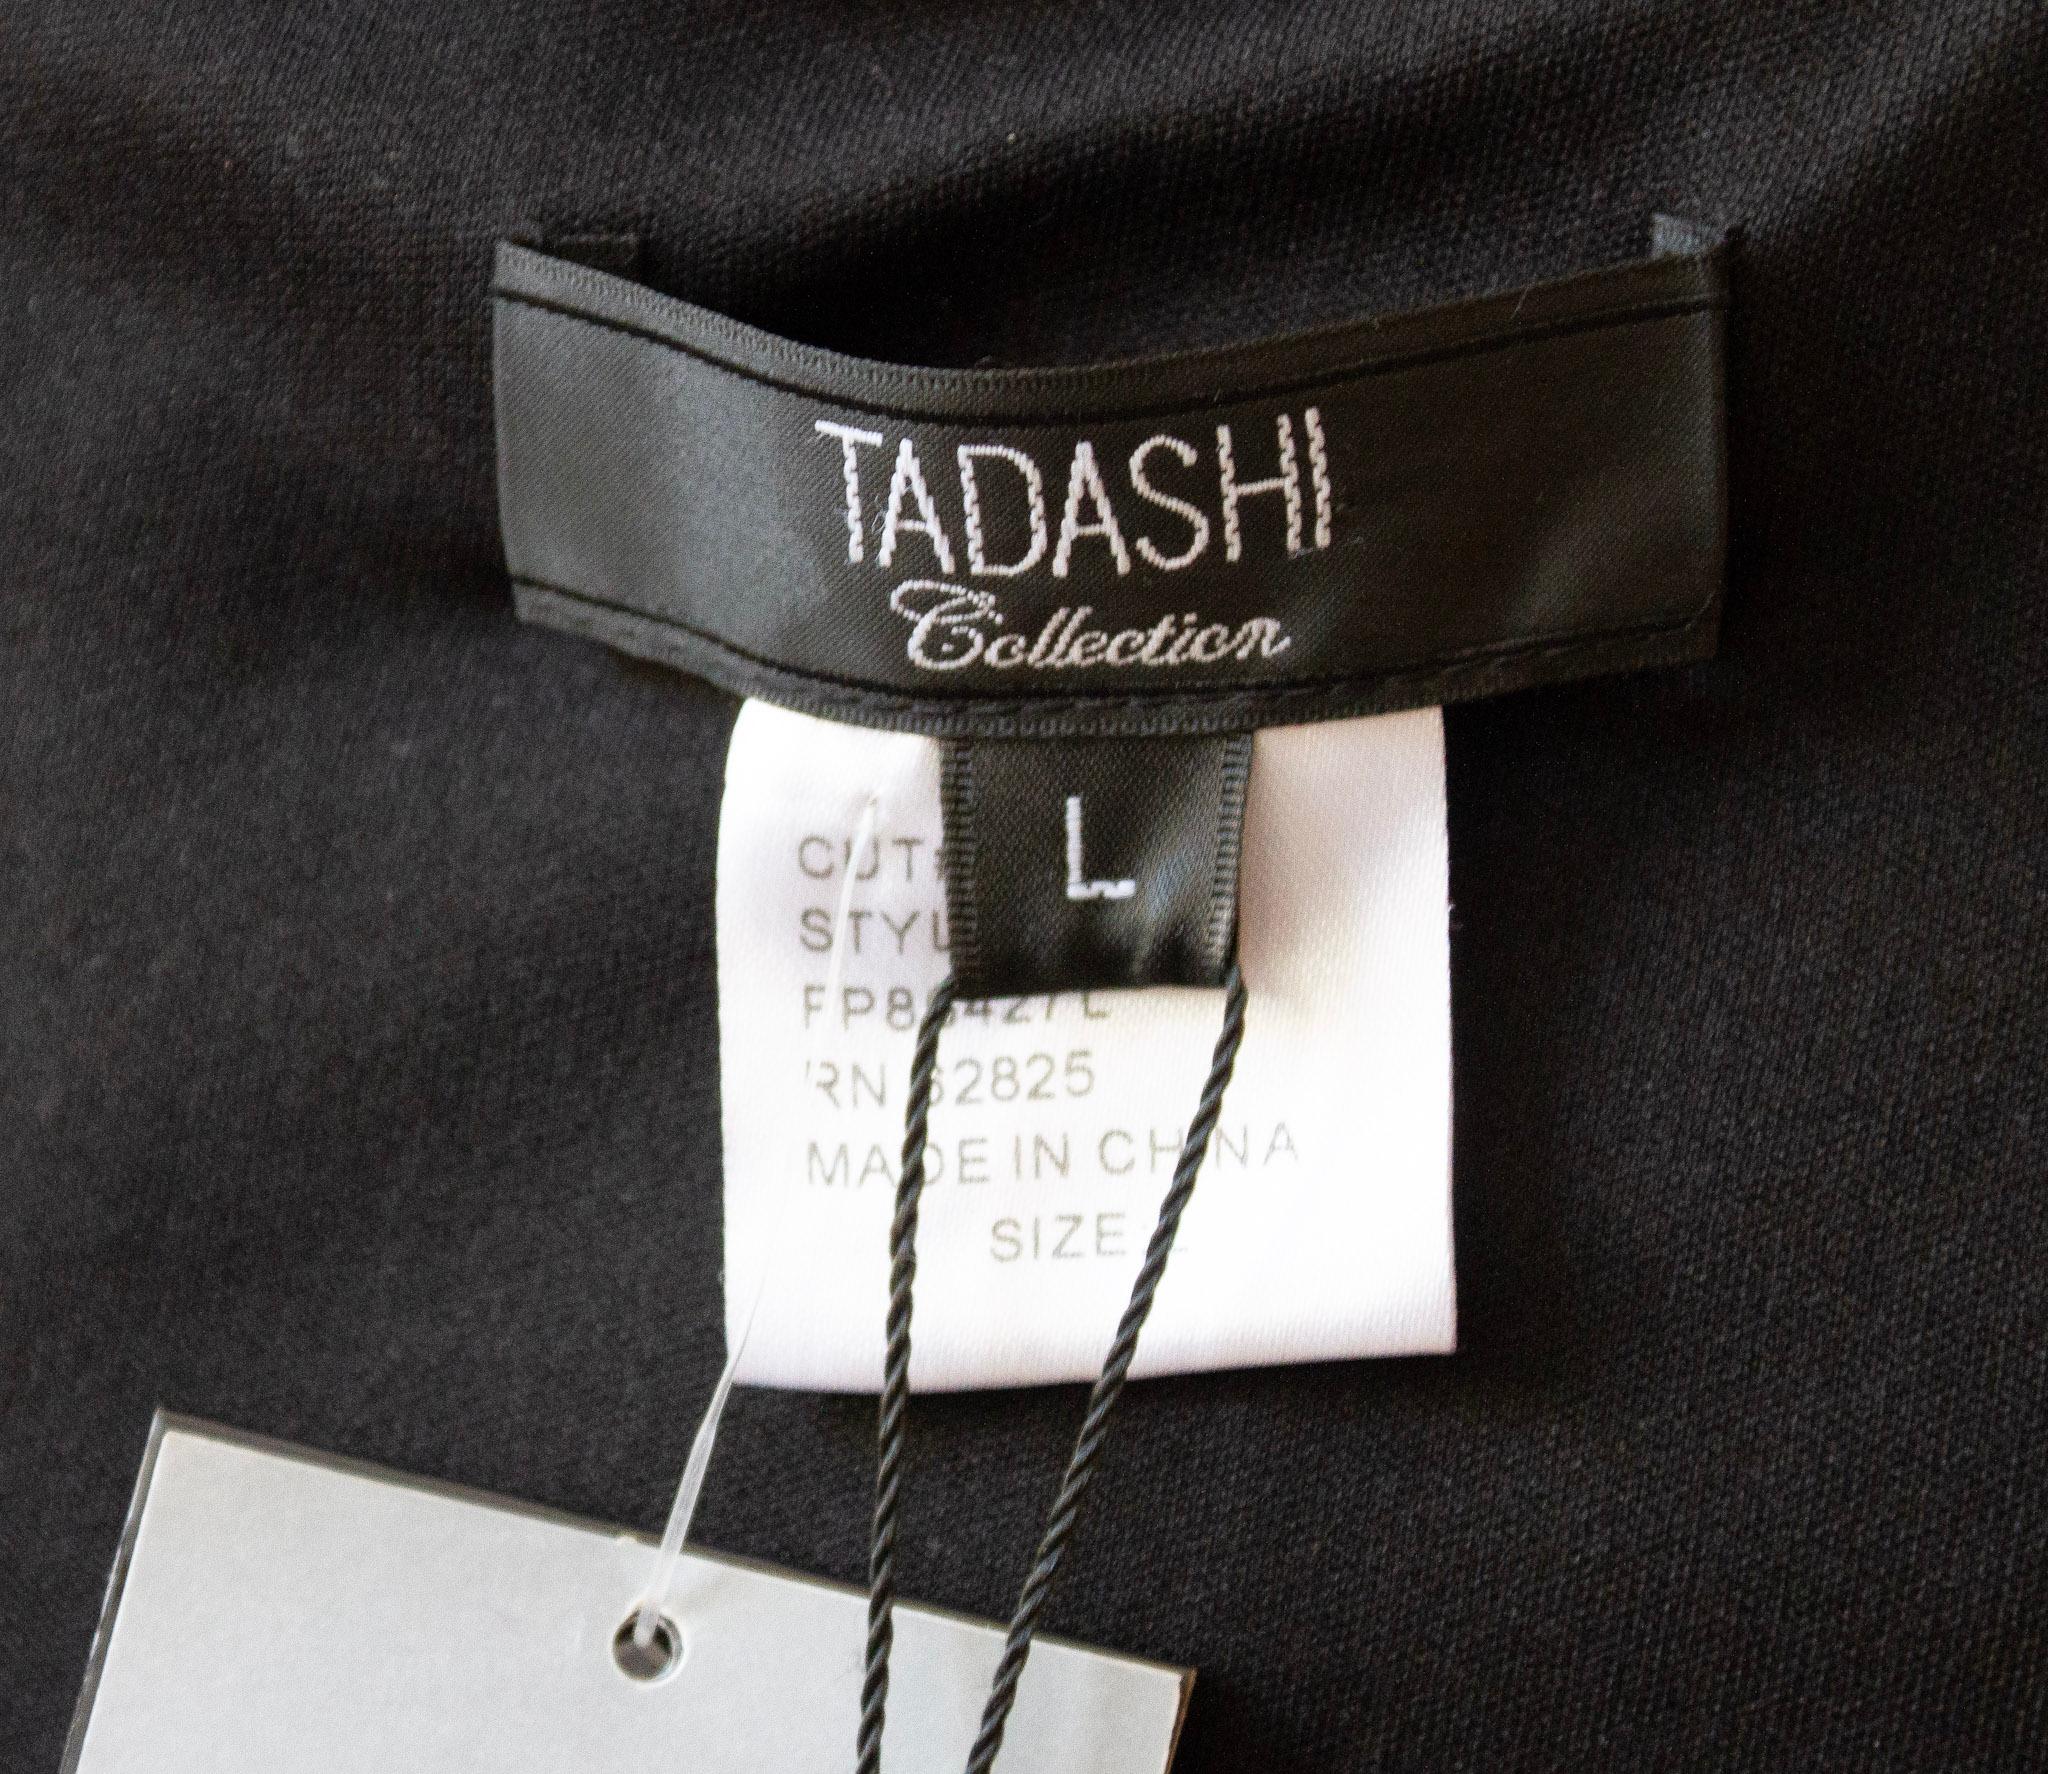 NWT Tadashi 1990's vintage black evening dress.

Size Large 

